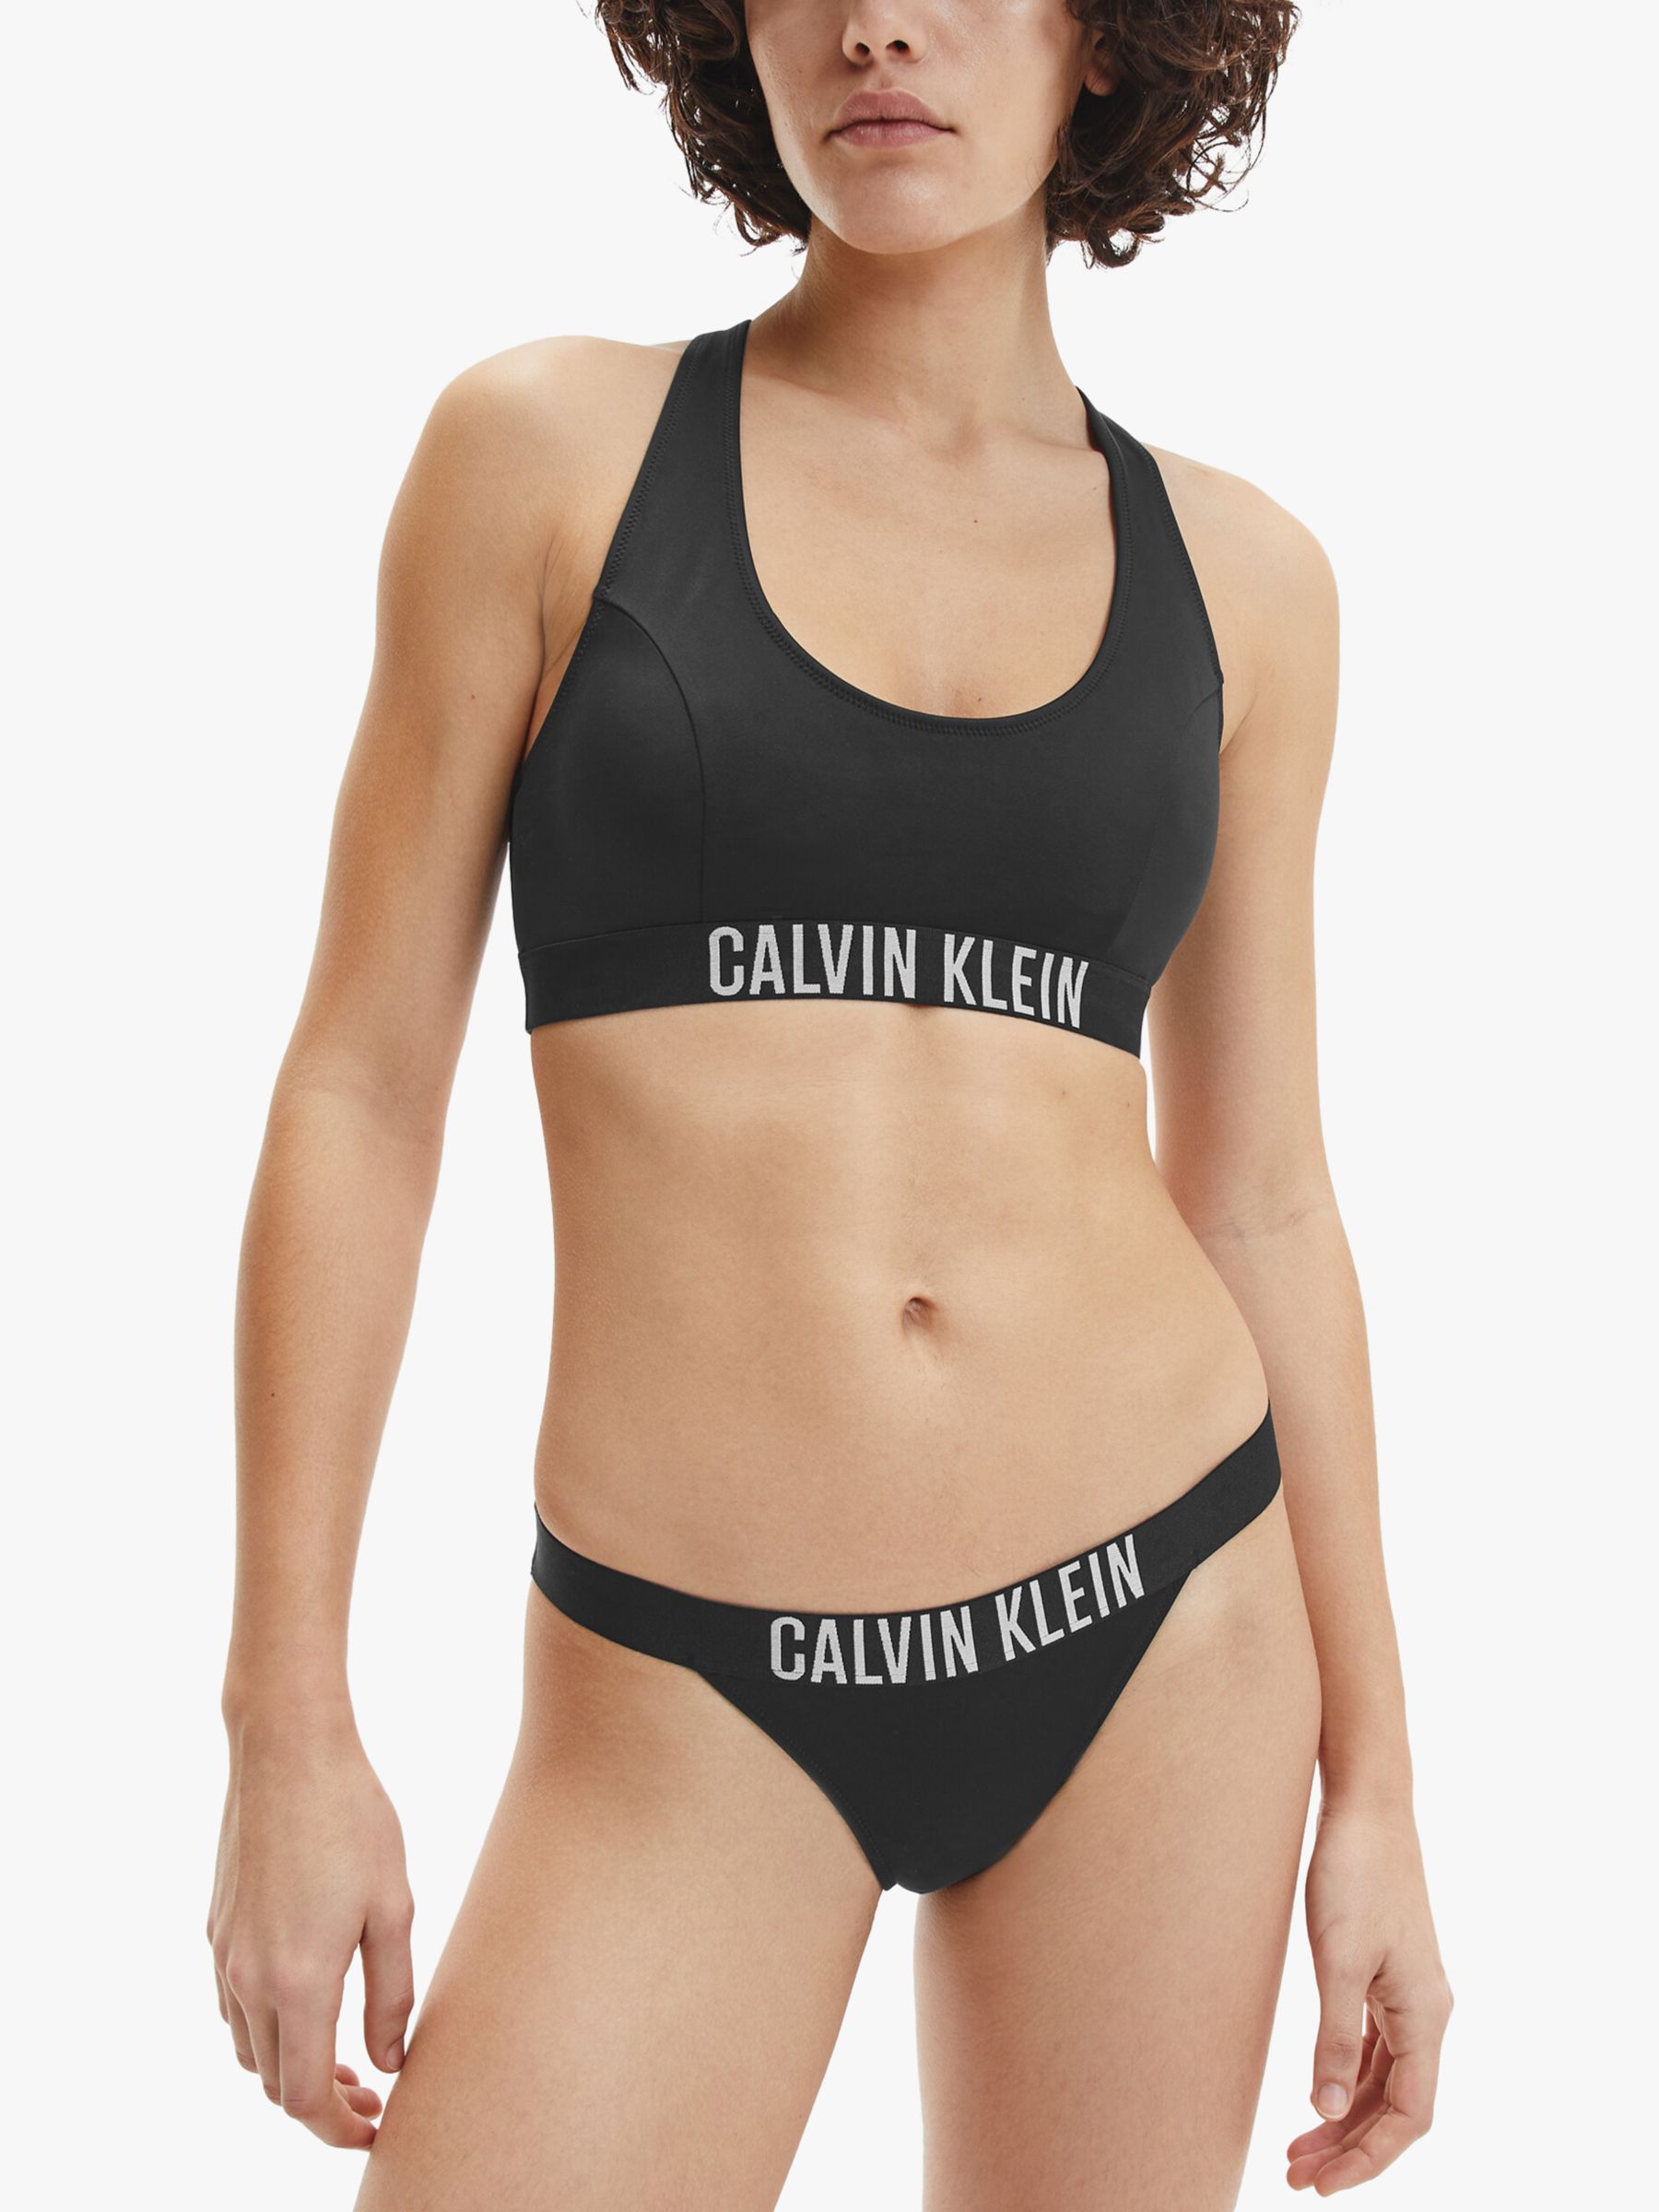 Klein Intense Power Brazilian Bikini